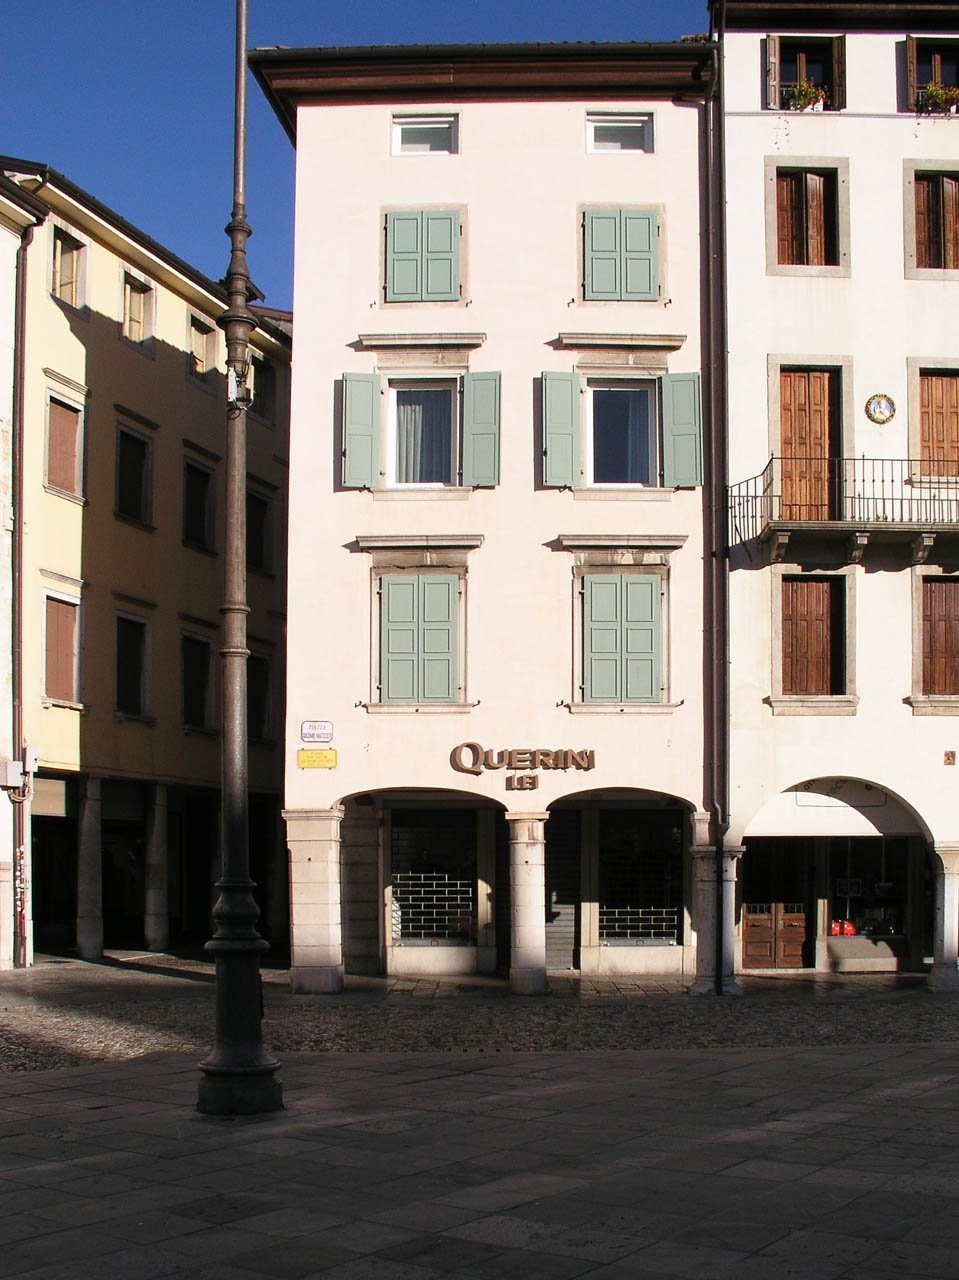 Casa Ricciotti (casa, in linea) - Udine (UD)  (XIV-XV)